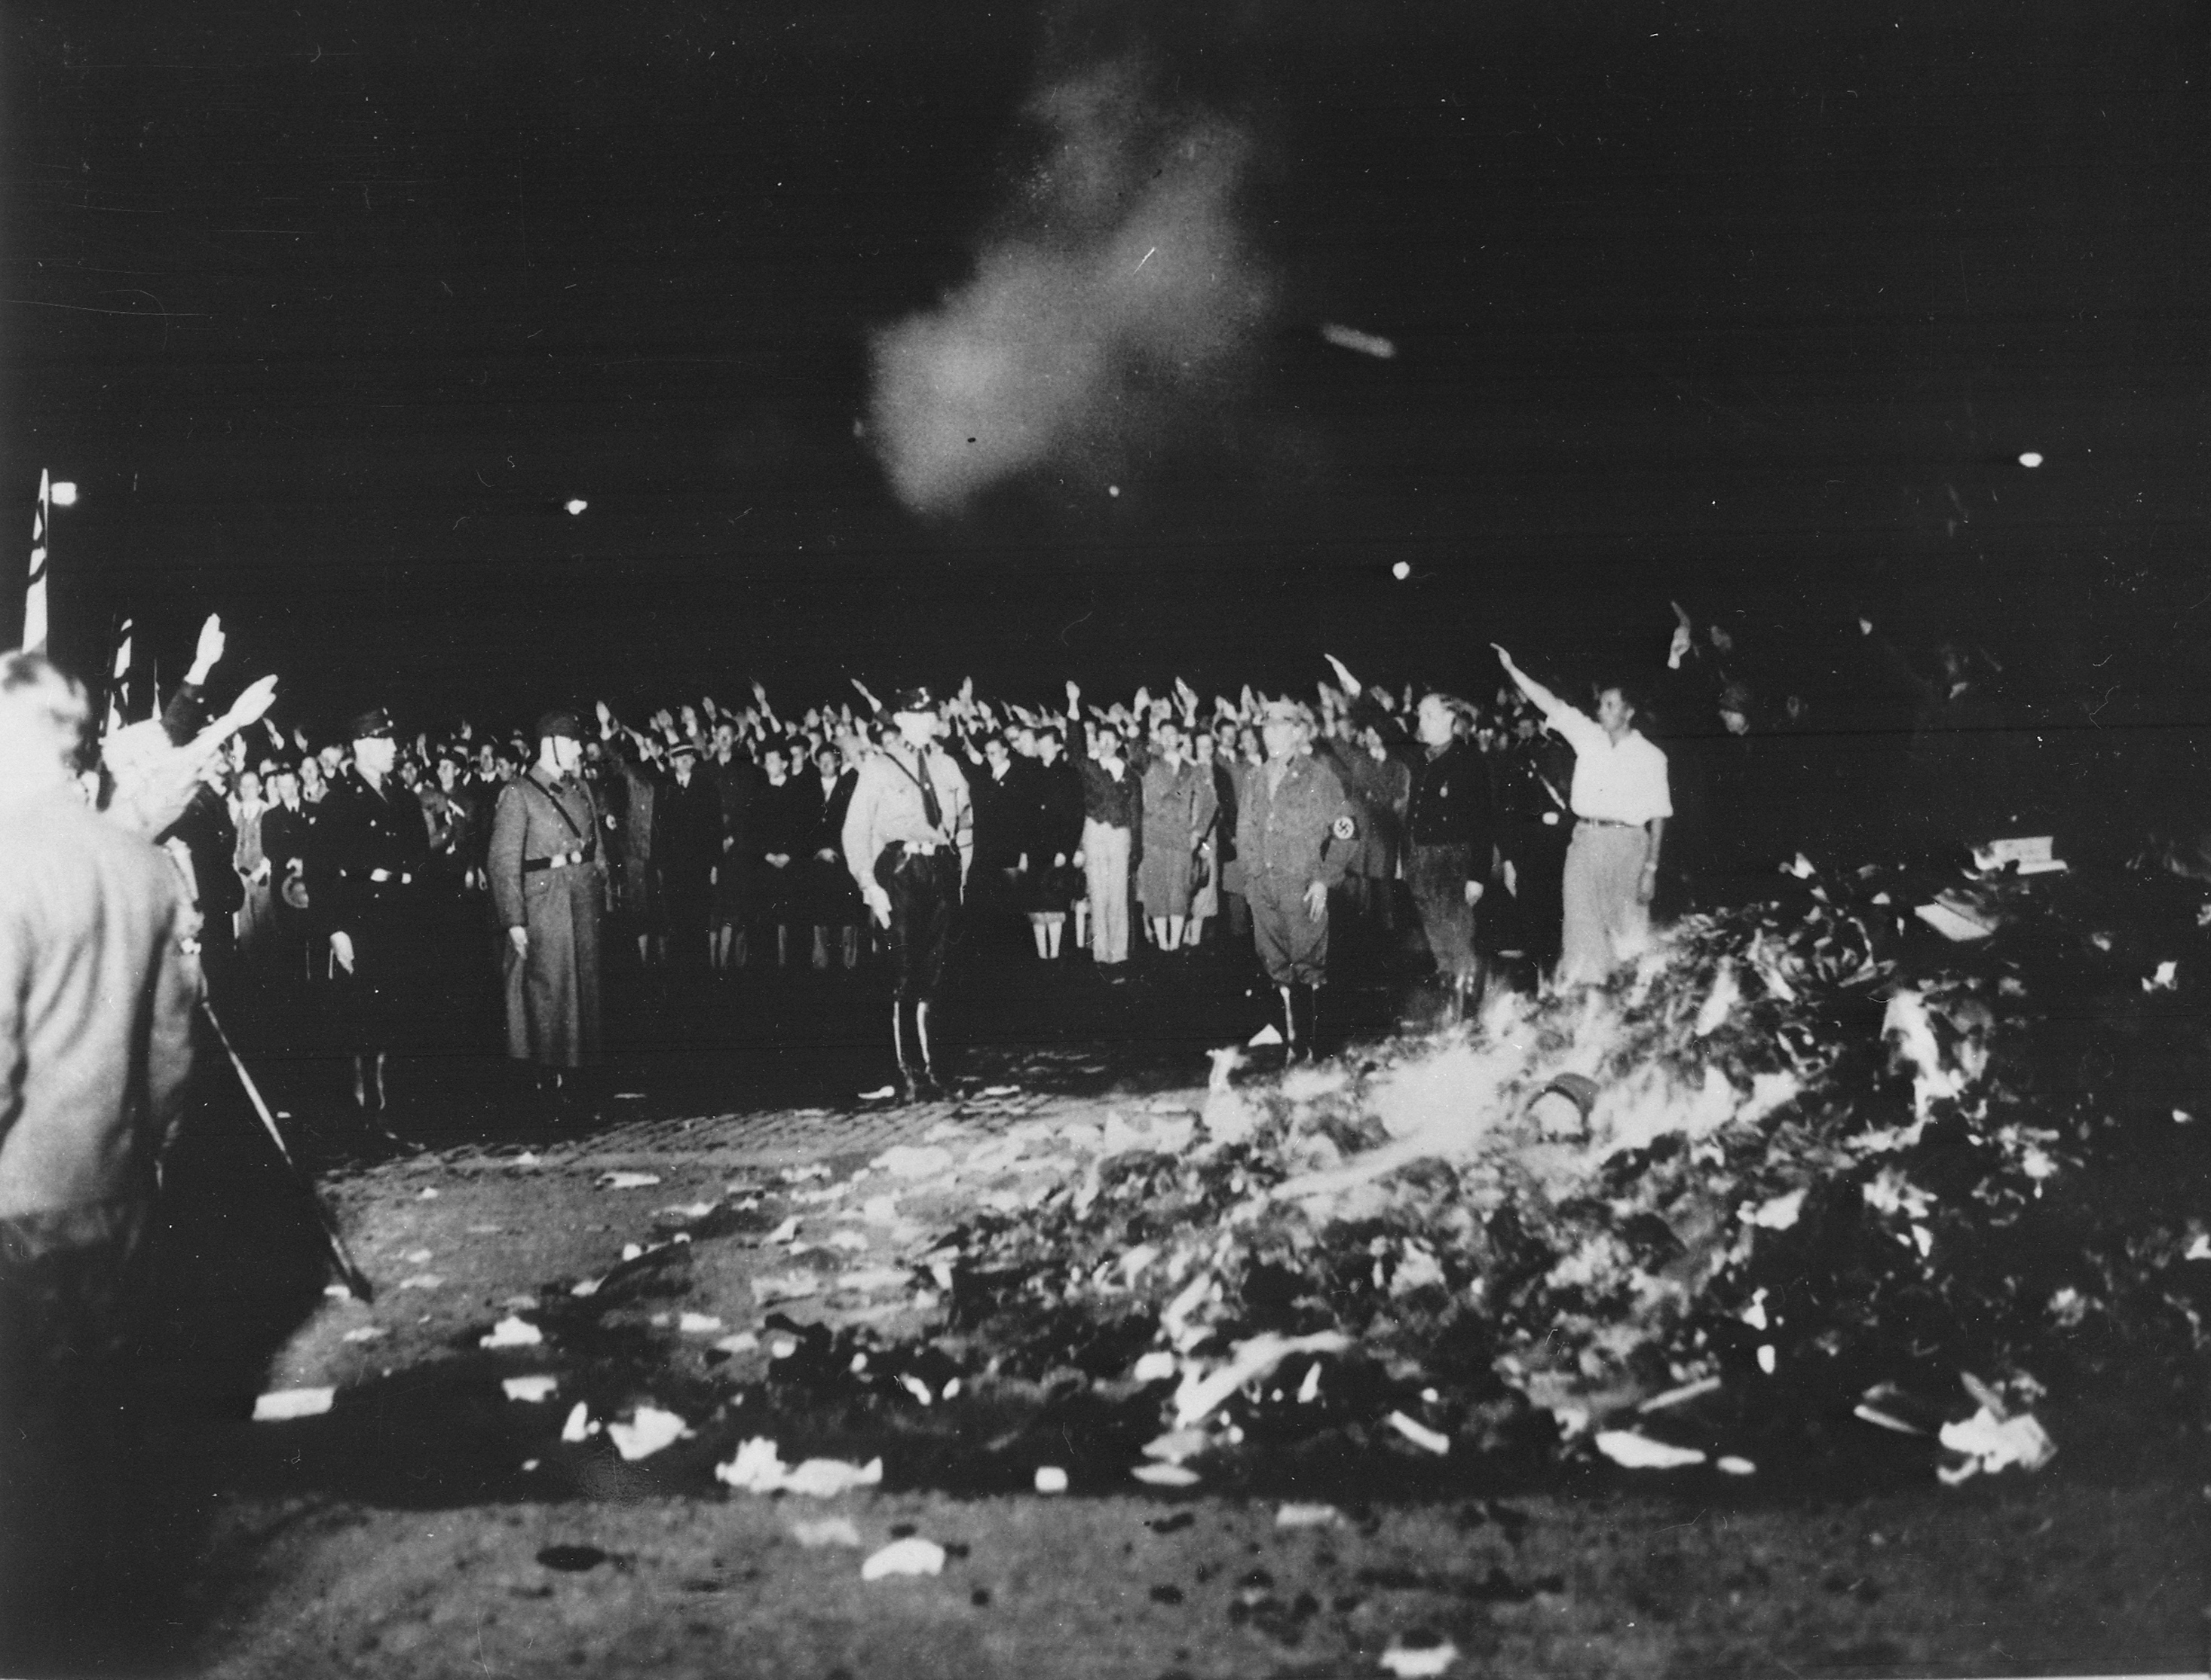 Deutsche Studenten verbrennen am 10. Mai 1933 eingesammelte, sog. "undeutsche" Schriften und Bücher öffentlich auf der zentralen Prachtstraße "Unter den Linden" in Berlin